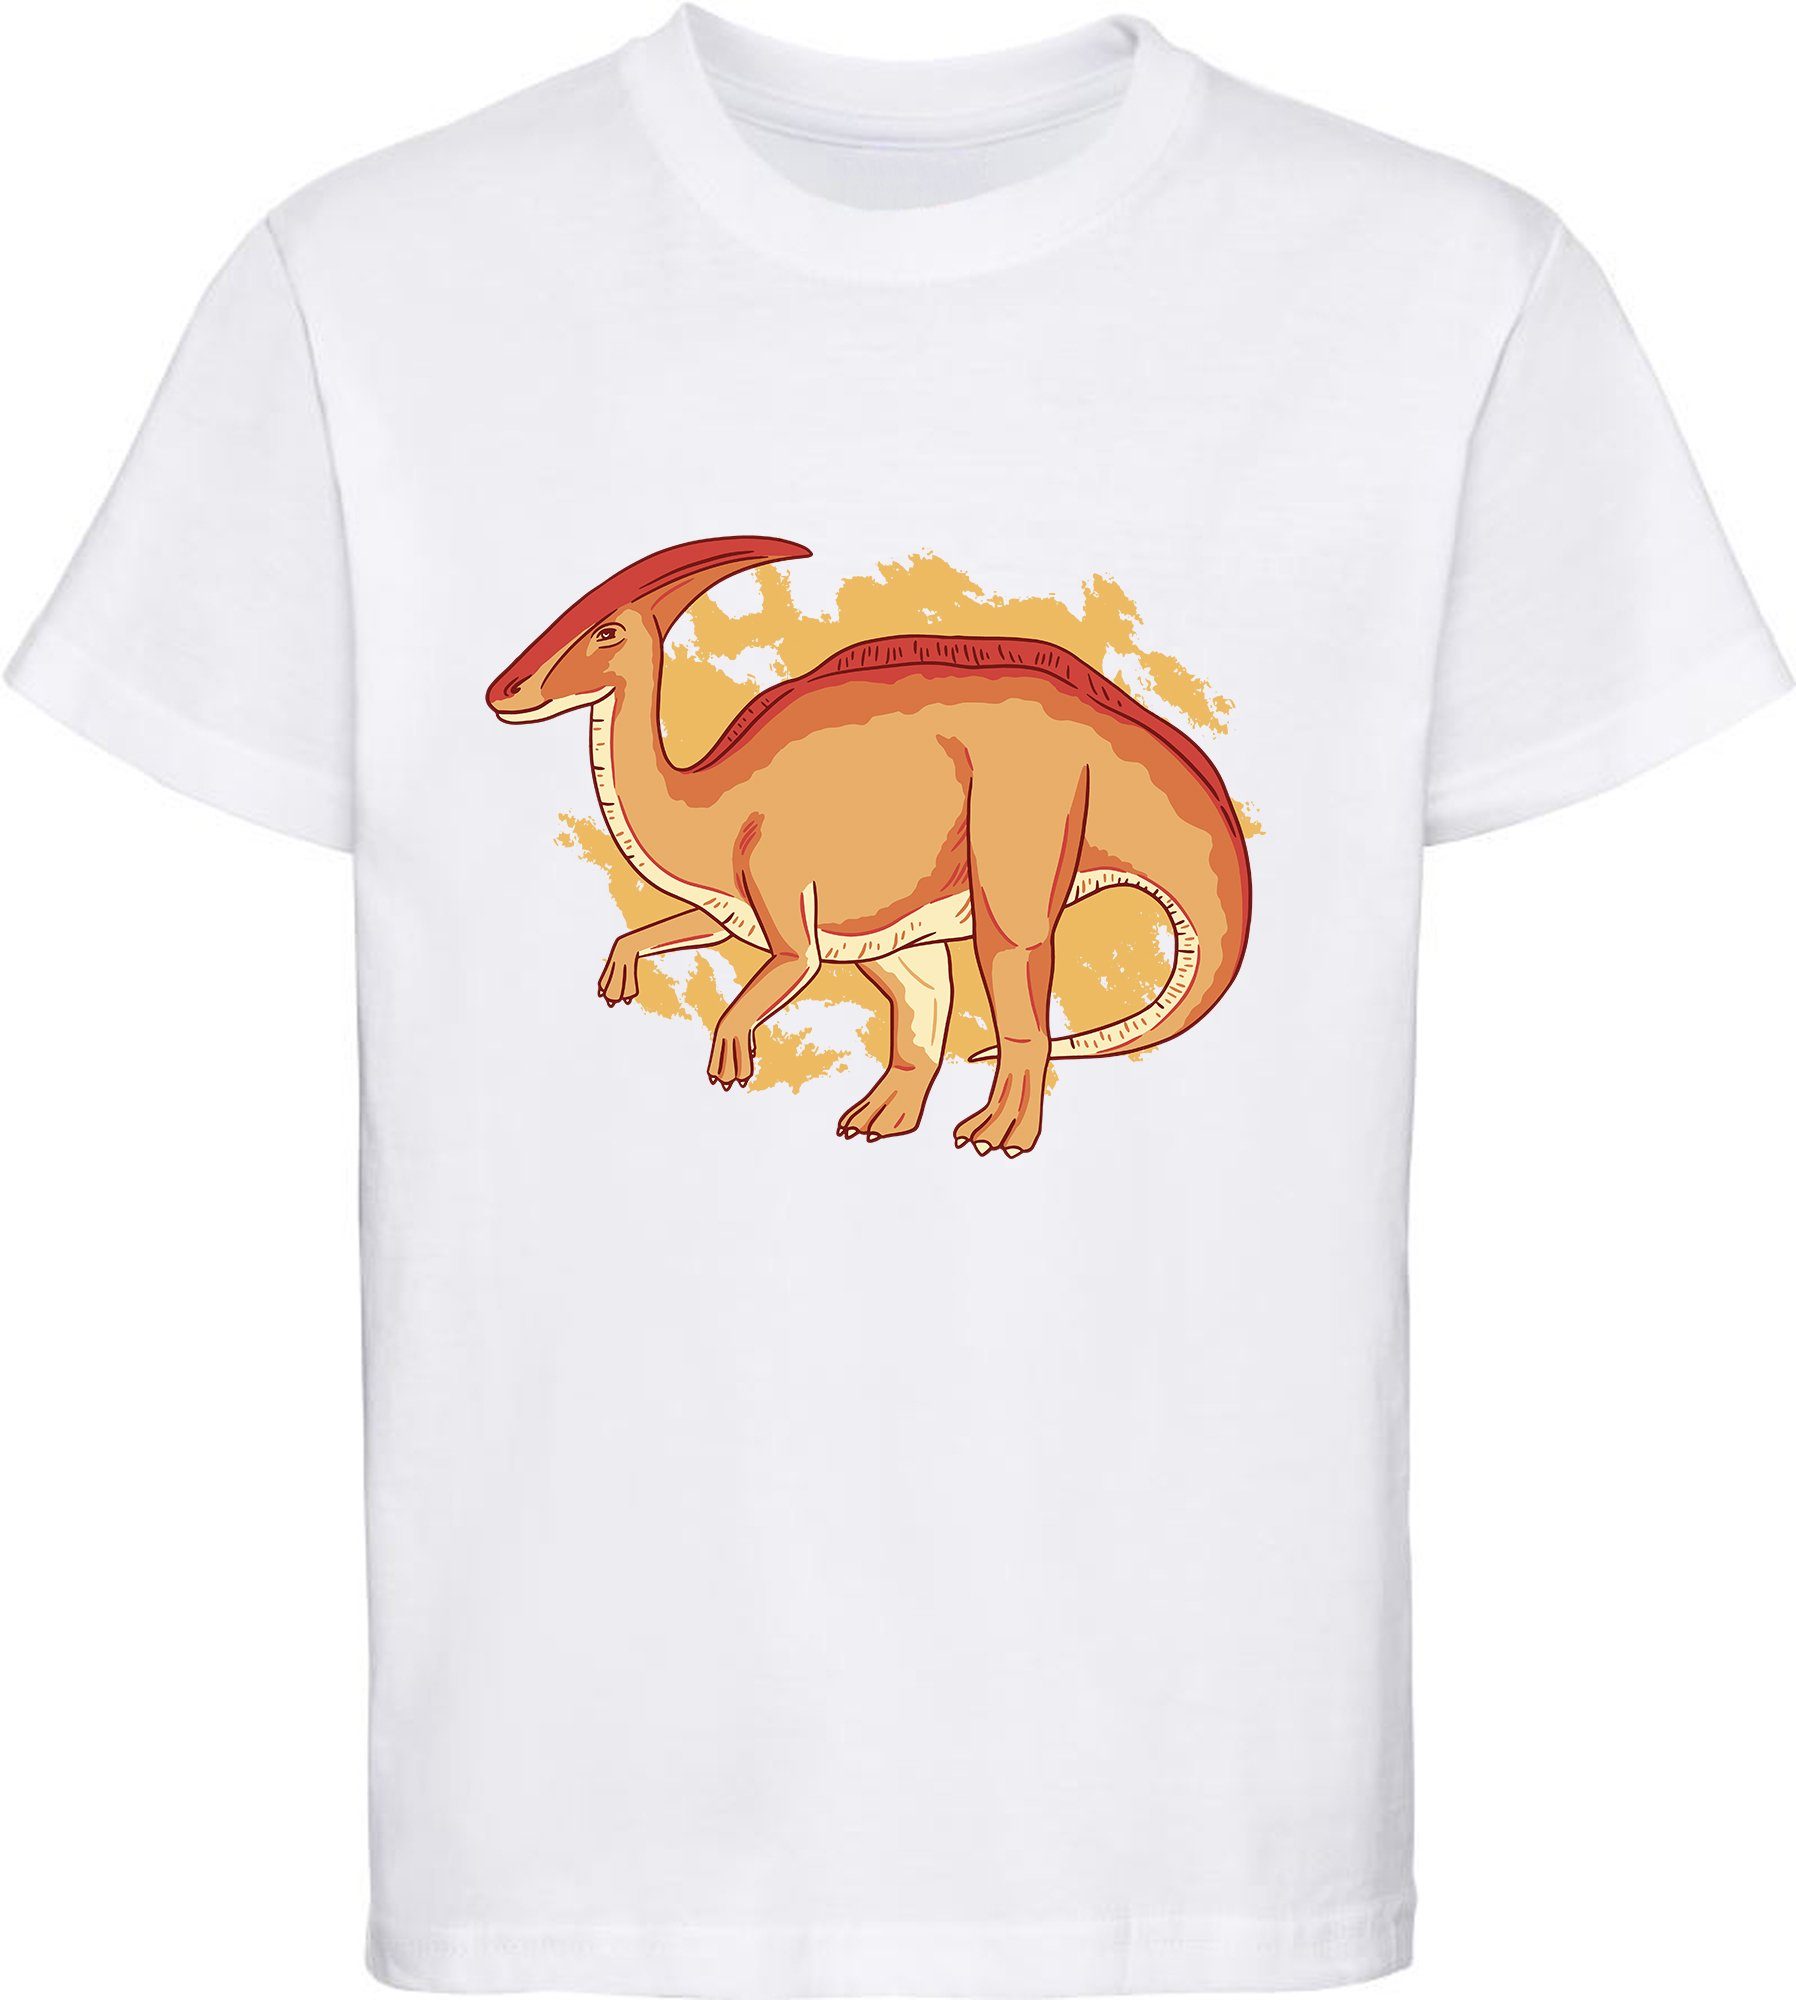 MyDesign24 Print-Shirt bedrucktes Kinder T-Shirt mit Parasaurolophus Baumwollshirt mit Dino, schwarz, weiß, rot, blau, i86 weiss